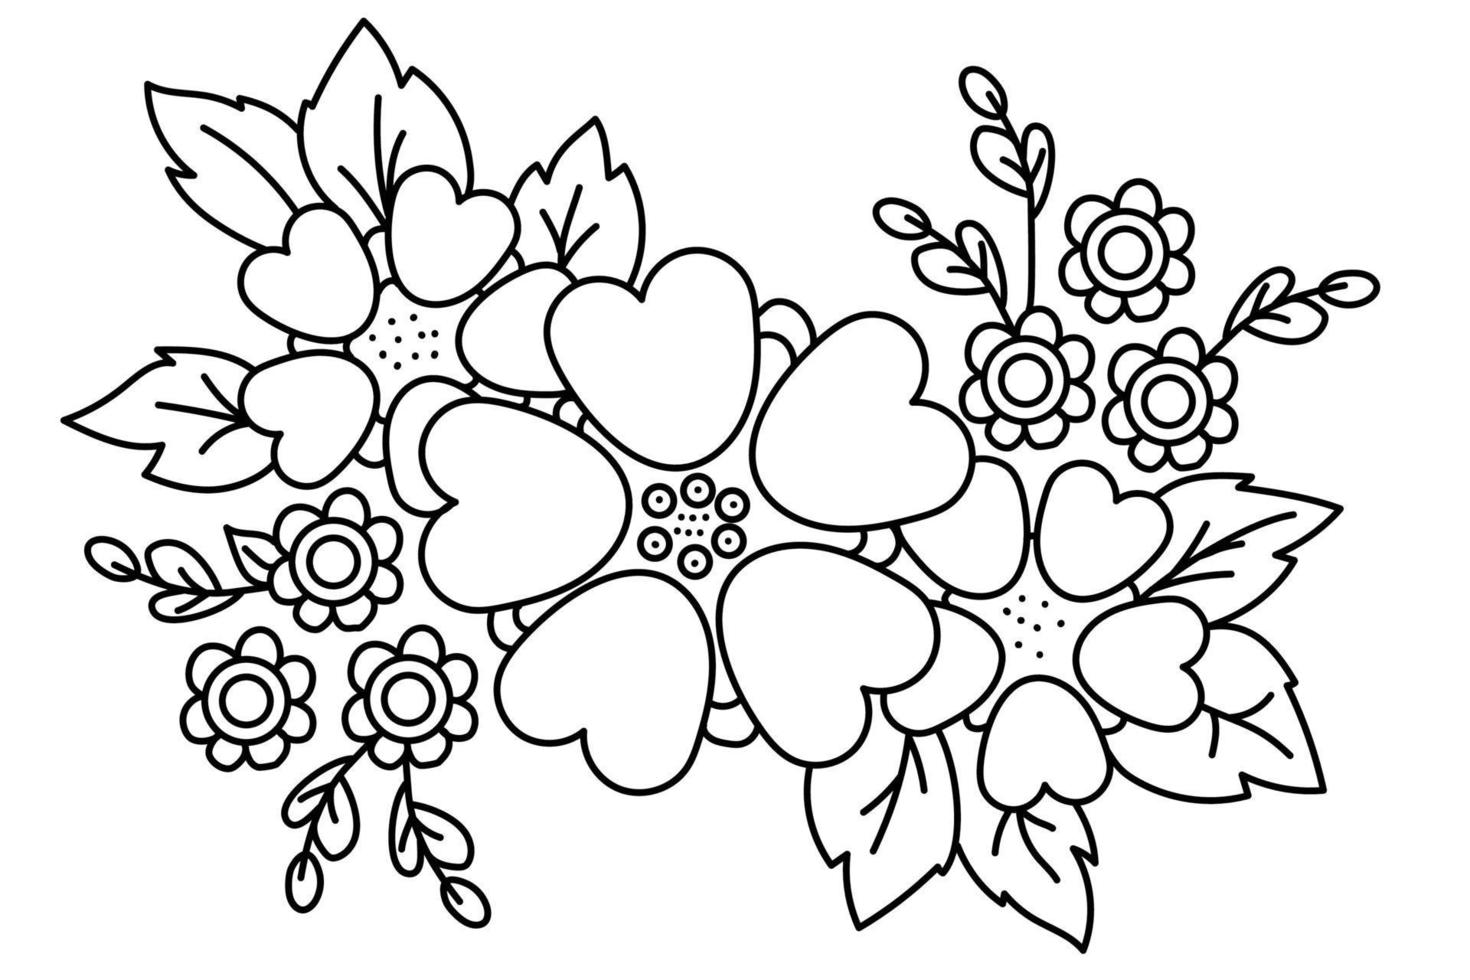 blommönster. dekorativt blomsterarrangemang, en bukett med växter och blommor, grenar och löv. vektorritning. svart linje, kontur. vit bakgrund. för tryck, dekor, design och vykort vektor